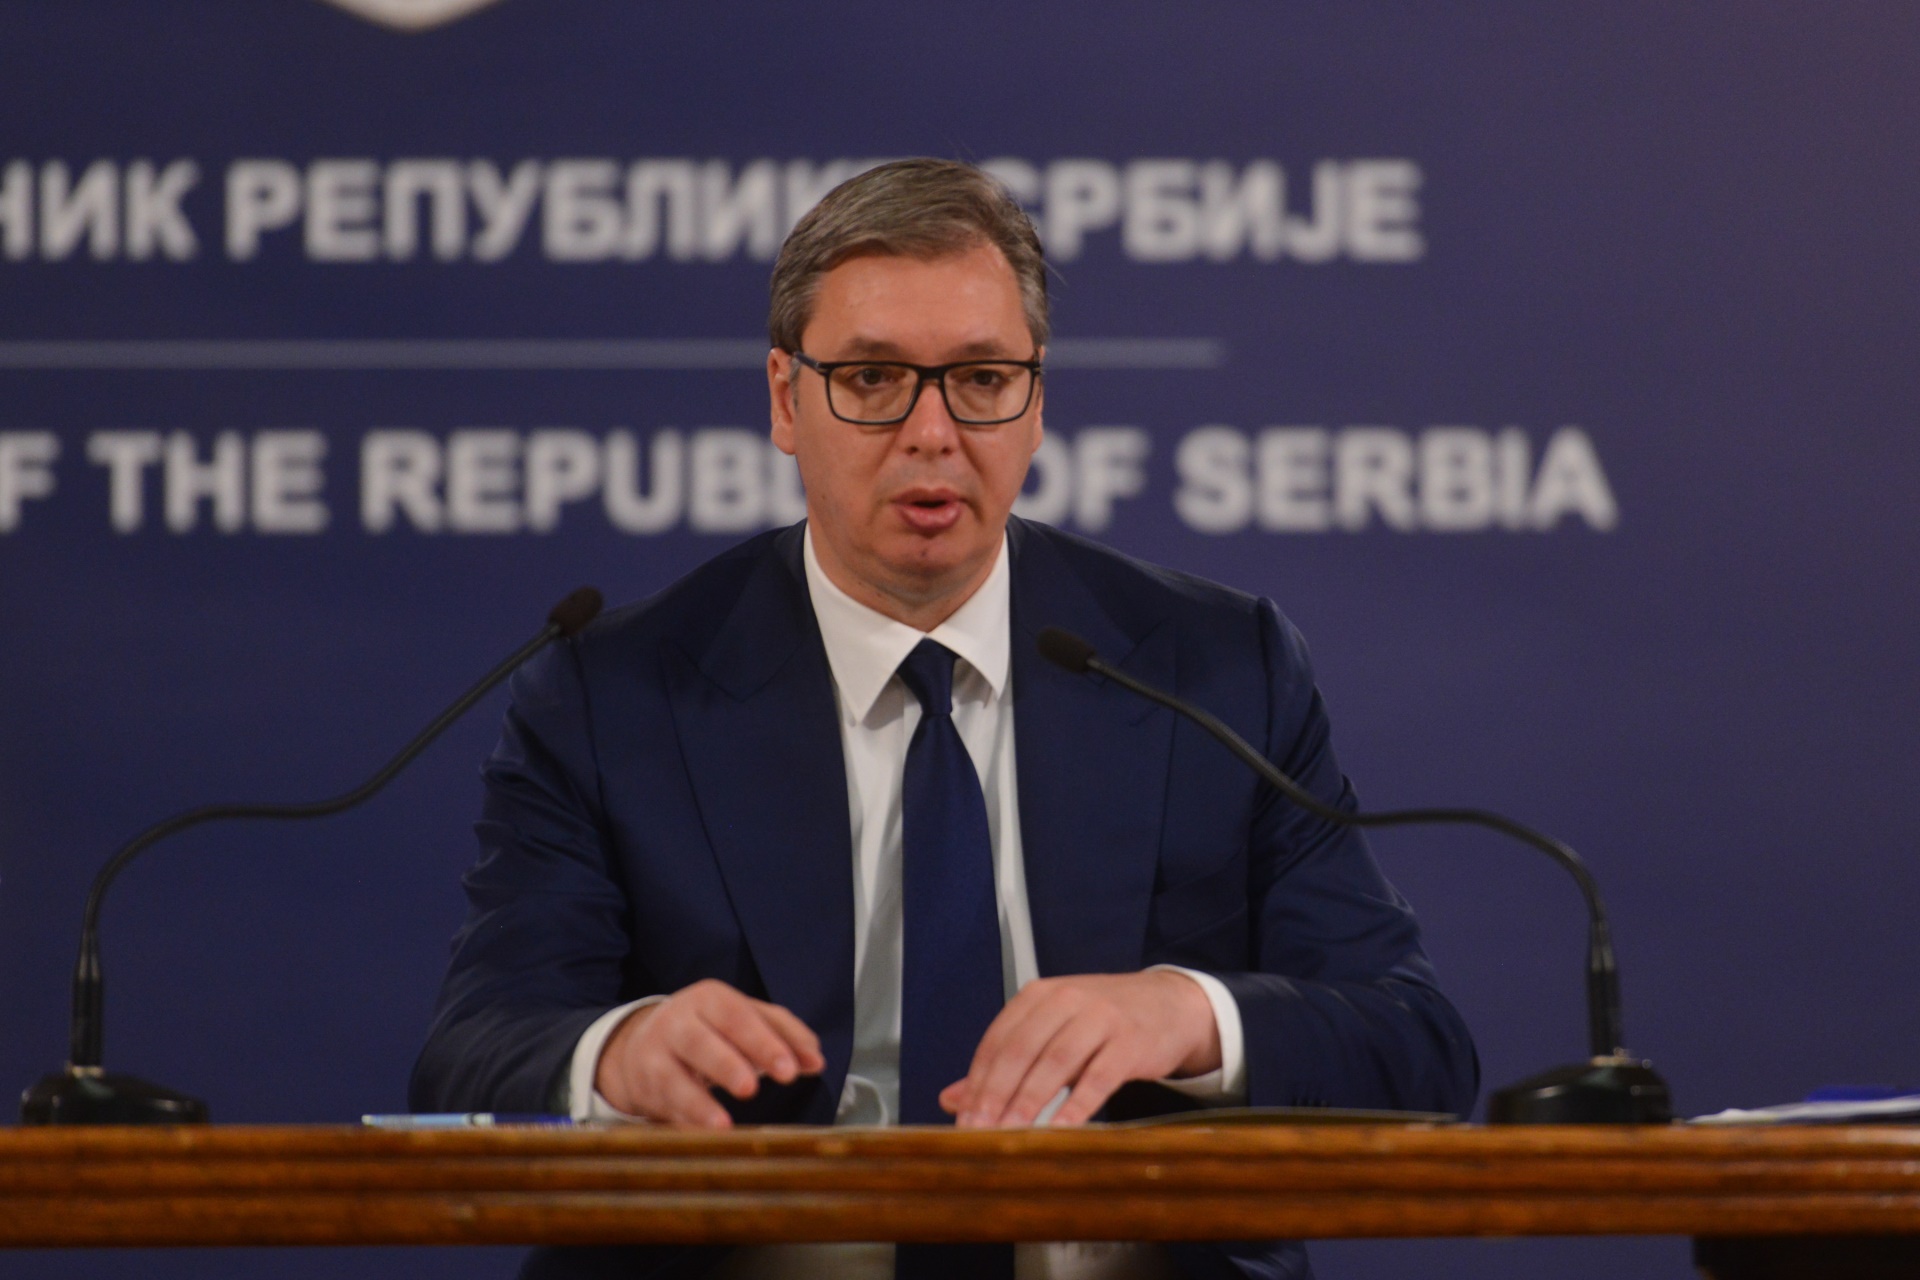 Председник Републике Србије Александар Вучић рекао је да очекује да ће успешно бити завршени разговори са радницима Фијата.